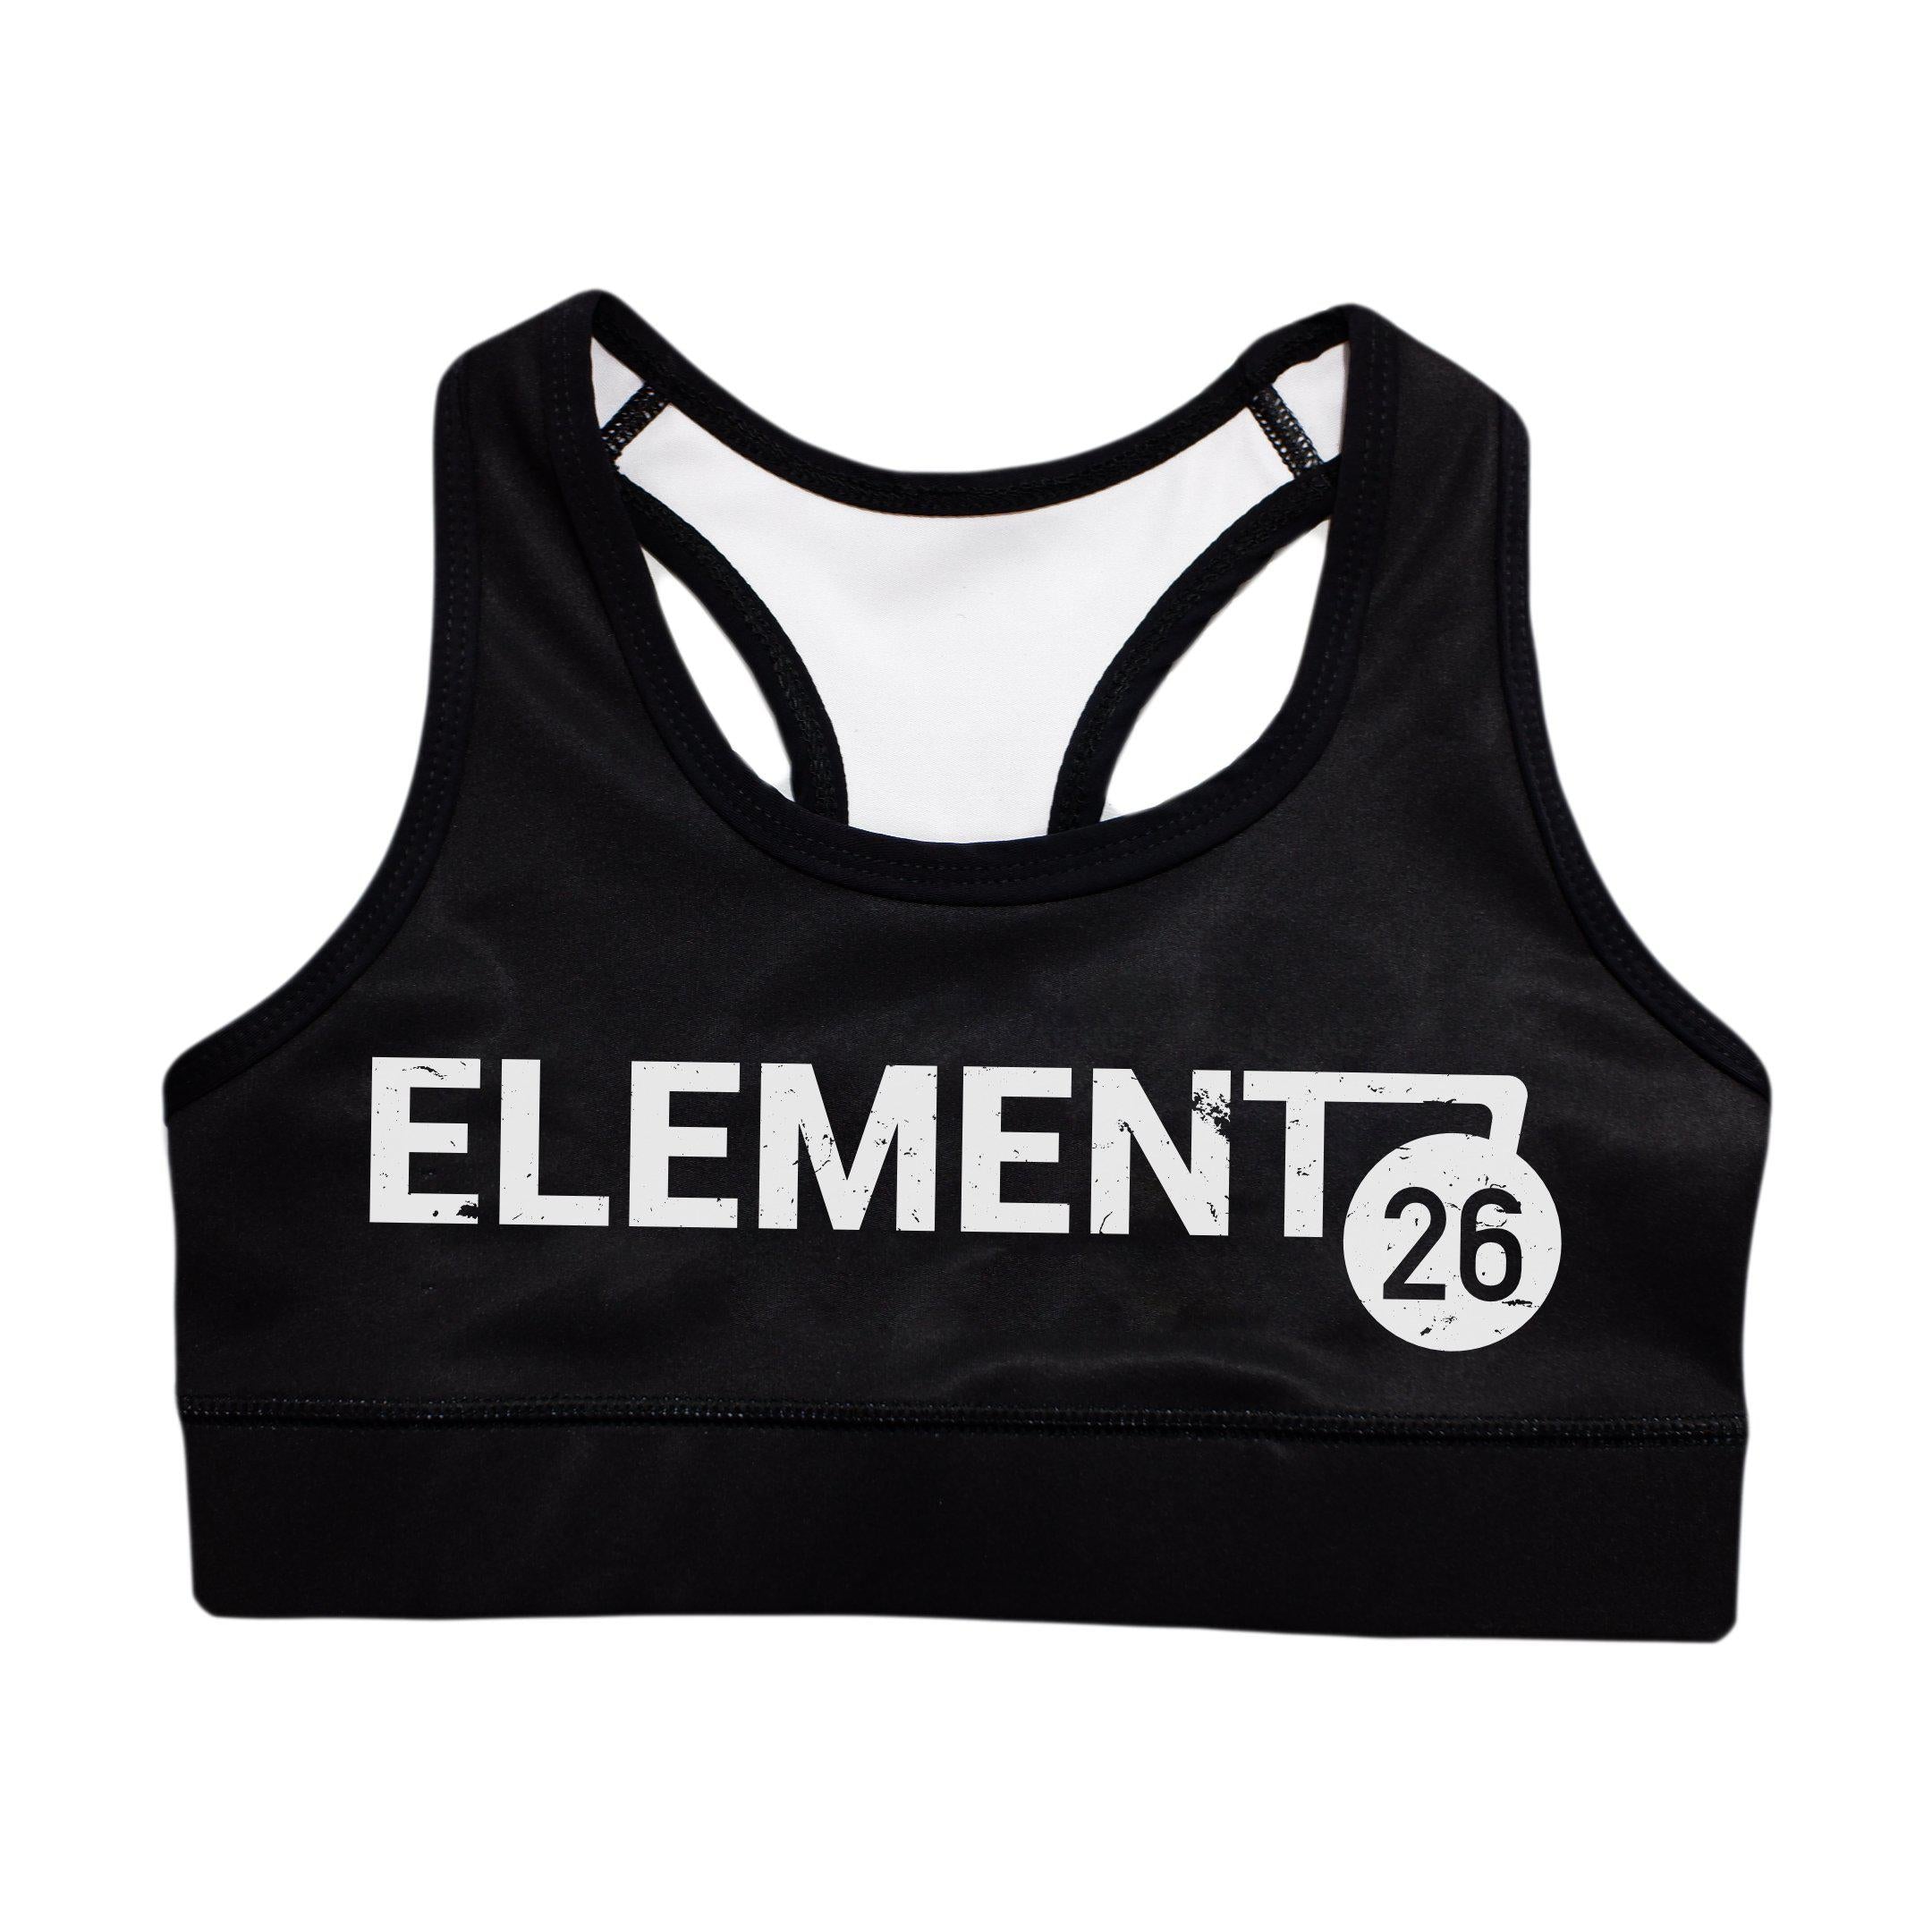 Element 26 Sports Bra - Zenko Fightwear